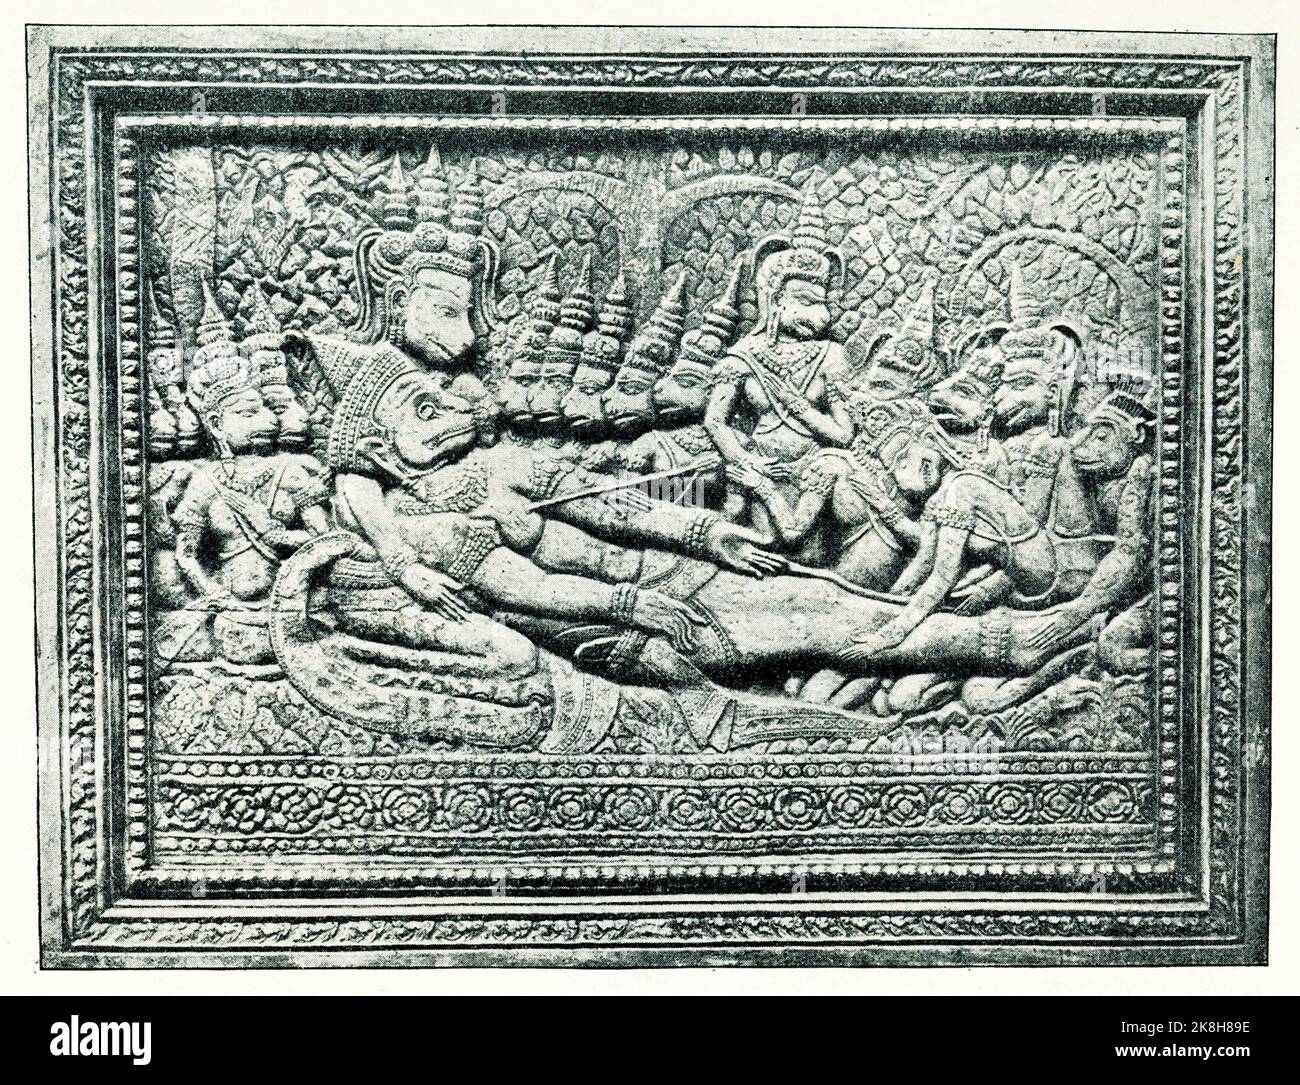 Die Bildunterschrift von 1910 lautet: „Der Tod des asiatischen gottes Hanuman. Eine Präsentation vom Ramayana. Eine Erleichterung aus dem Tempel von Angkor Wat in Kambodscha.“ Hanuman ist ein hinduistischer gott und ein göttlicher vanara-Begleiter des gottes Rama. Hanuman ist eine der zentralen Figuren des Hindu-Epos Ramayana. Das Ramayana ist ein uraltes Sanskrit-Epos, das Prinz Ramas Bestreben folgt, seine geliebte Frau Sita mit Hilfe einer Armee von Affen aus den Klauen von Ravana zu retten. Sie wird traditionell der Urheberschaft des Weisen Valmiki zugeschrieben und datiert auf etwa 500 v. Chr. bis 100 v. Chr. Stockfoto